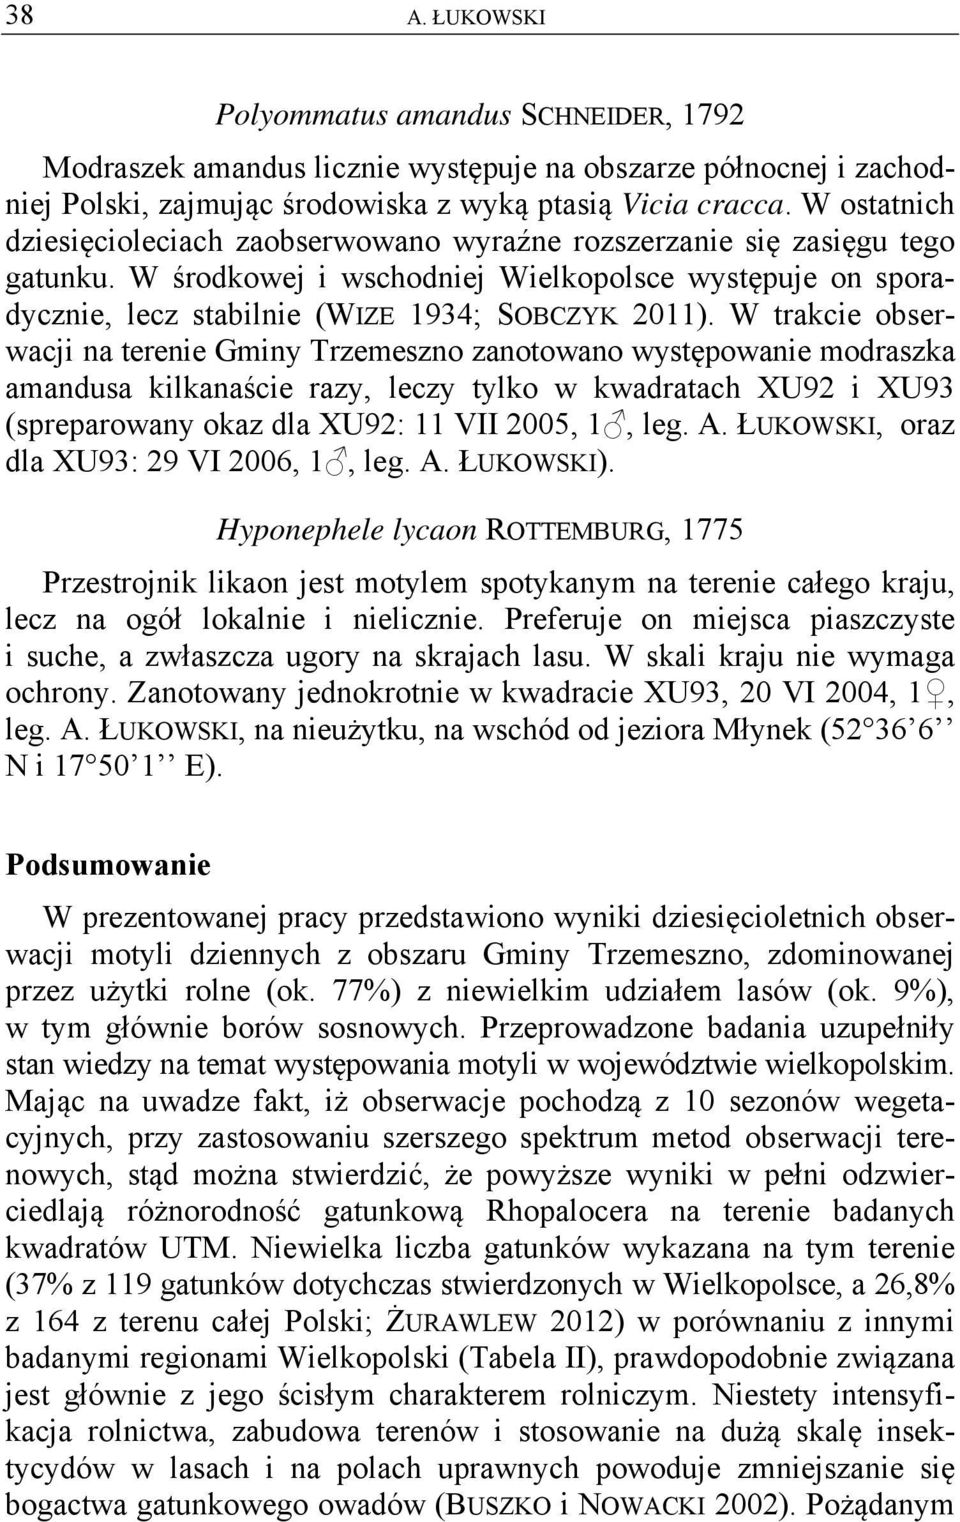 W trakcie obserwacji na terenie Gminy Trzemeszno zanotowano występowanie modraszka amandusa kilkanaście razy, leczy tylko w kwadratach XU92 i XU93 (spreparowany okaz dla XU92: 11 VII 2005, 1, leg. A.